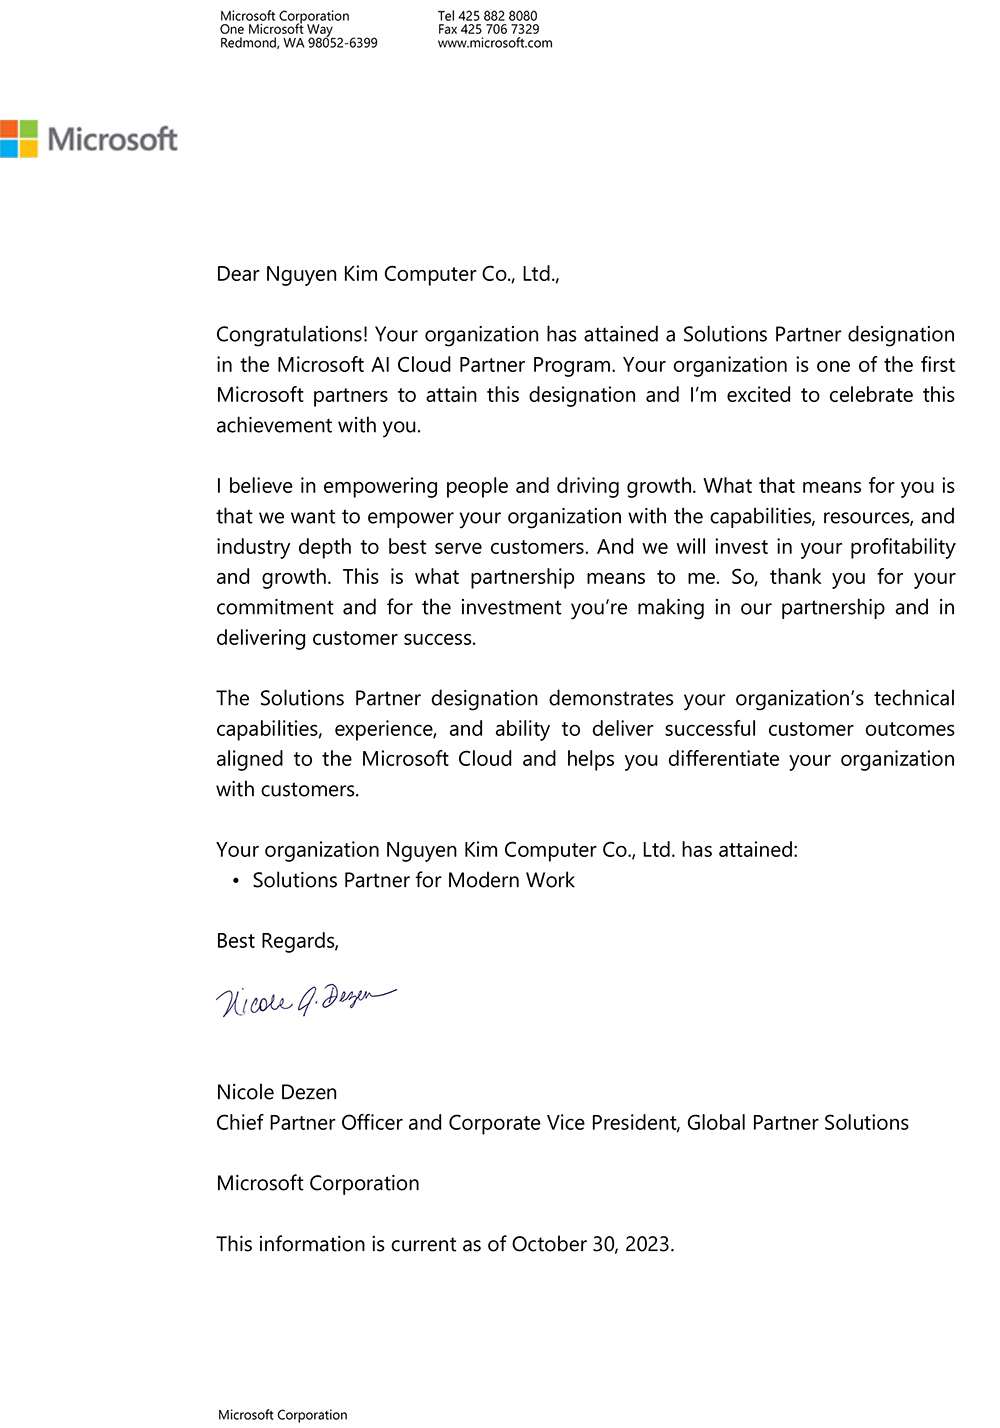 Vi tính Nguyên Kim được Microsoft chứng nhận "Solutions Partner for Modern Work"  (Đối tác giải pháp cho công việc hiện đại)